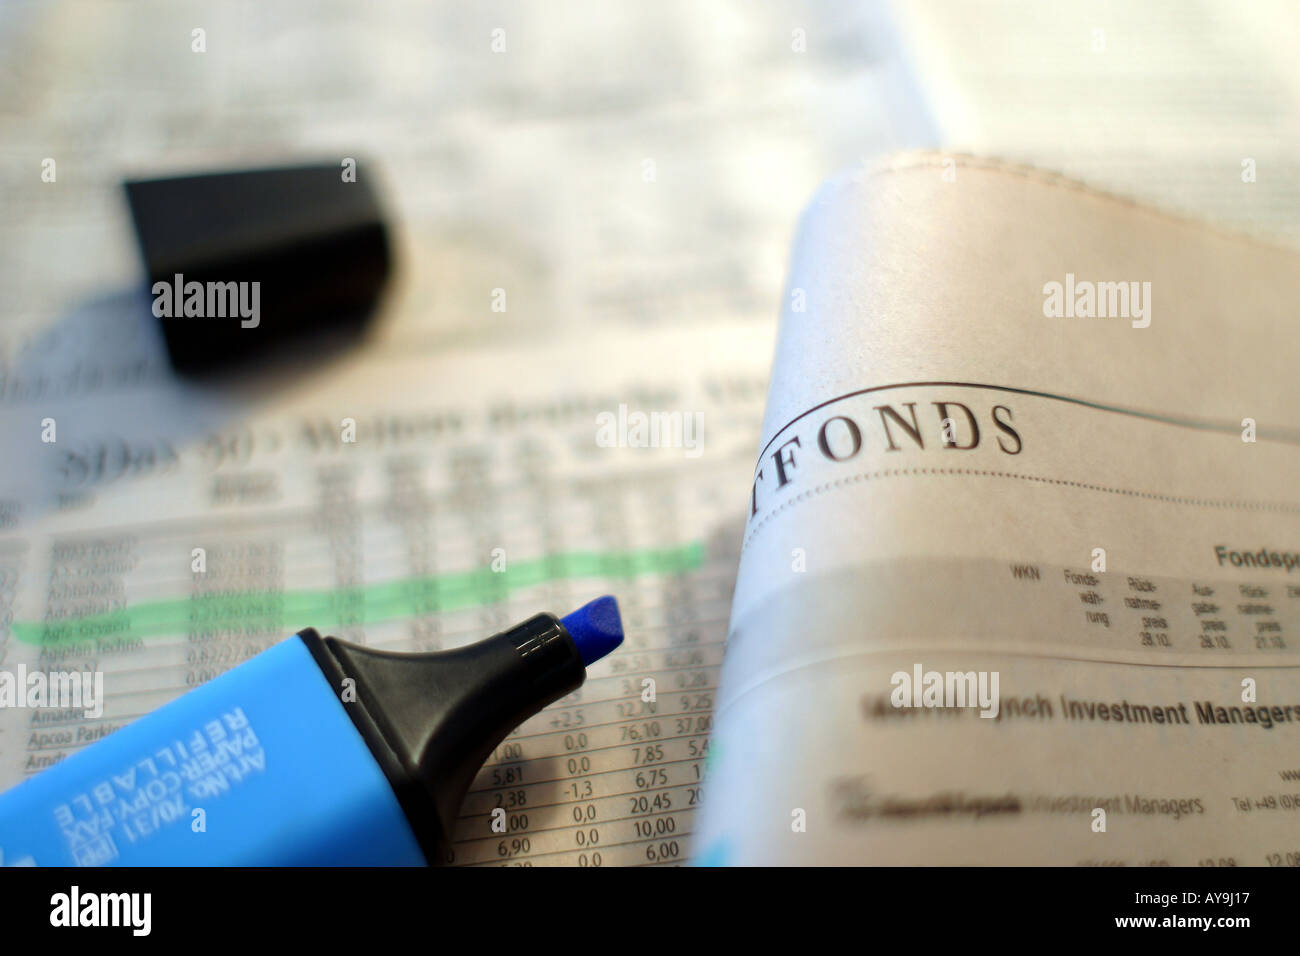 Fondsberichte in Financial Times Deutschland Stock Photo